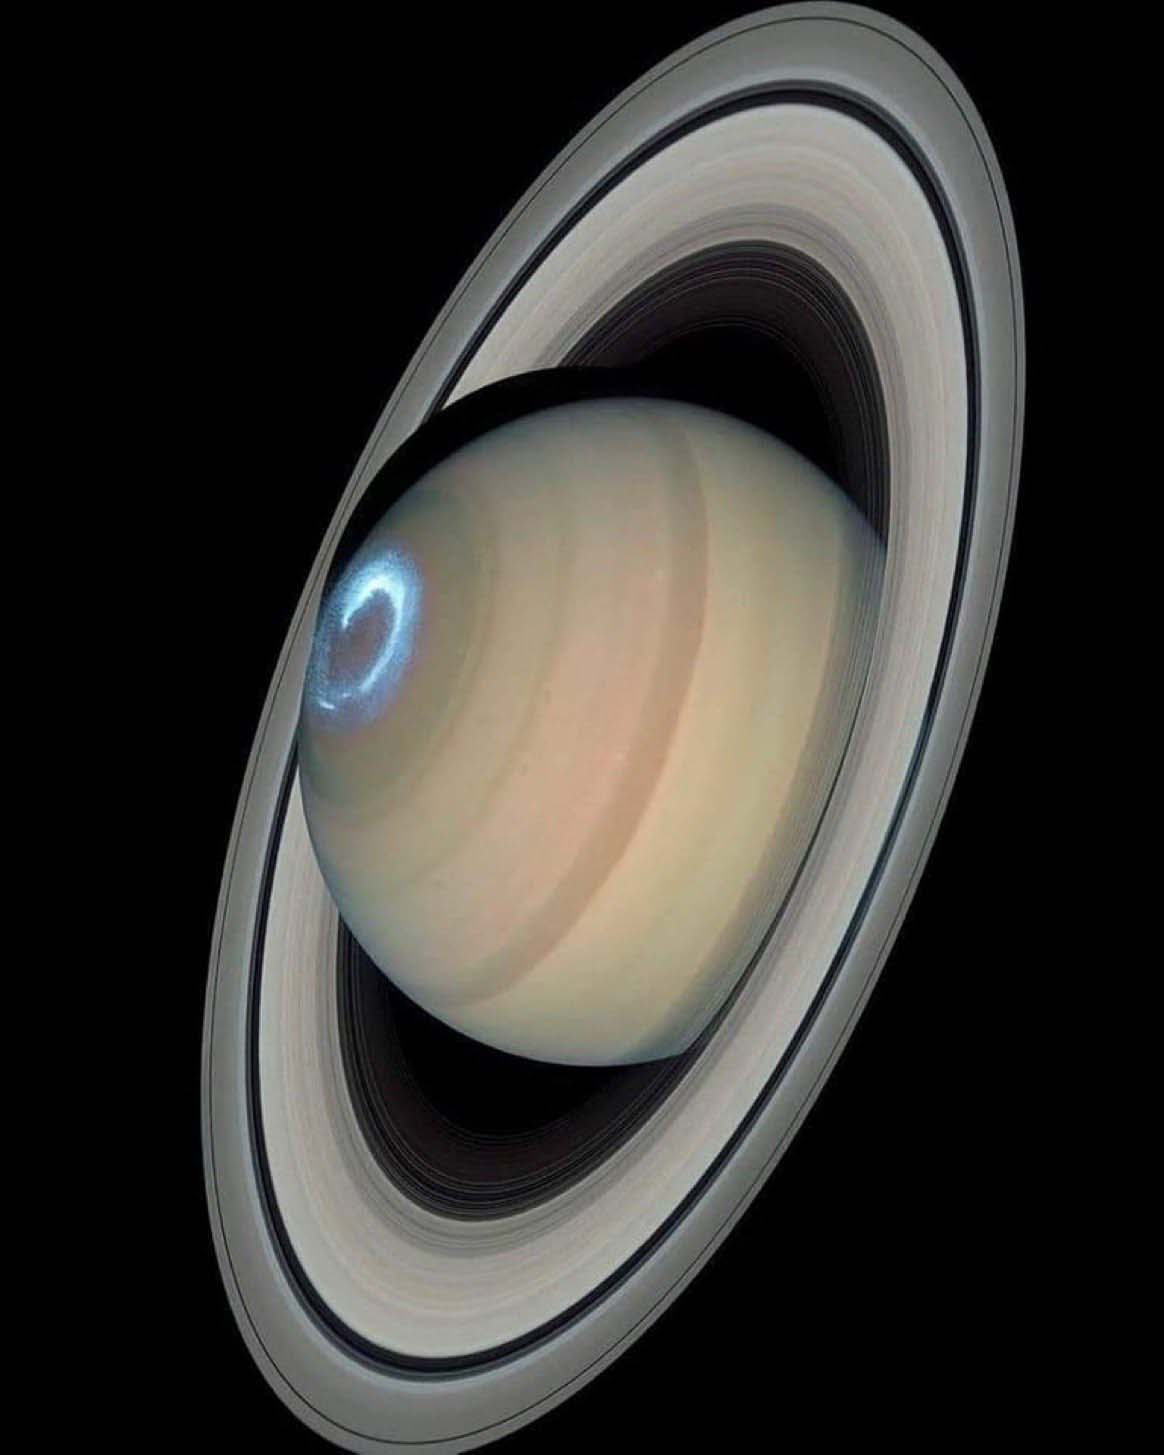 土星极光,由哈勃望远镜捕捉